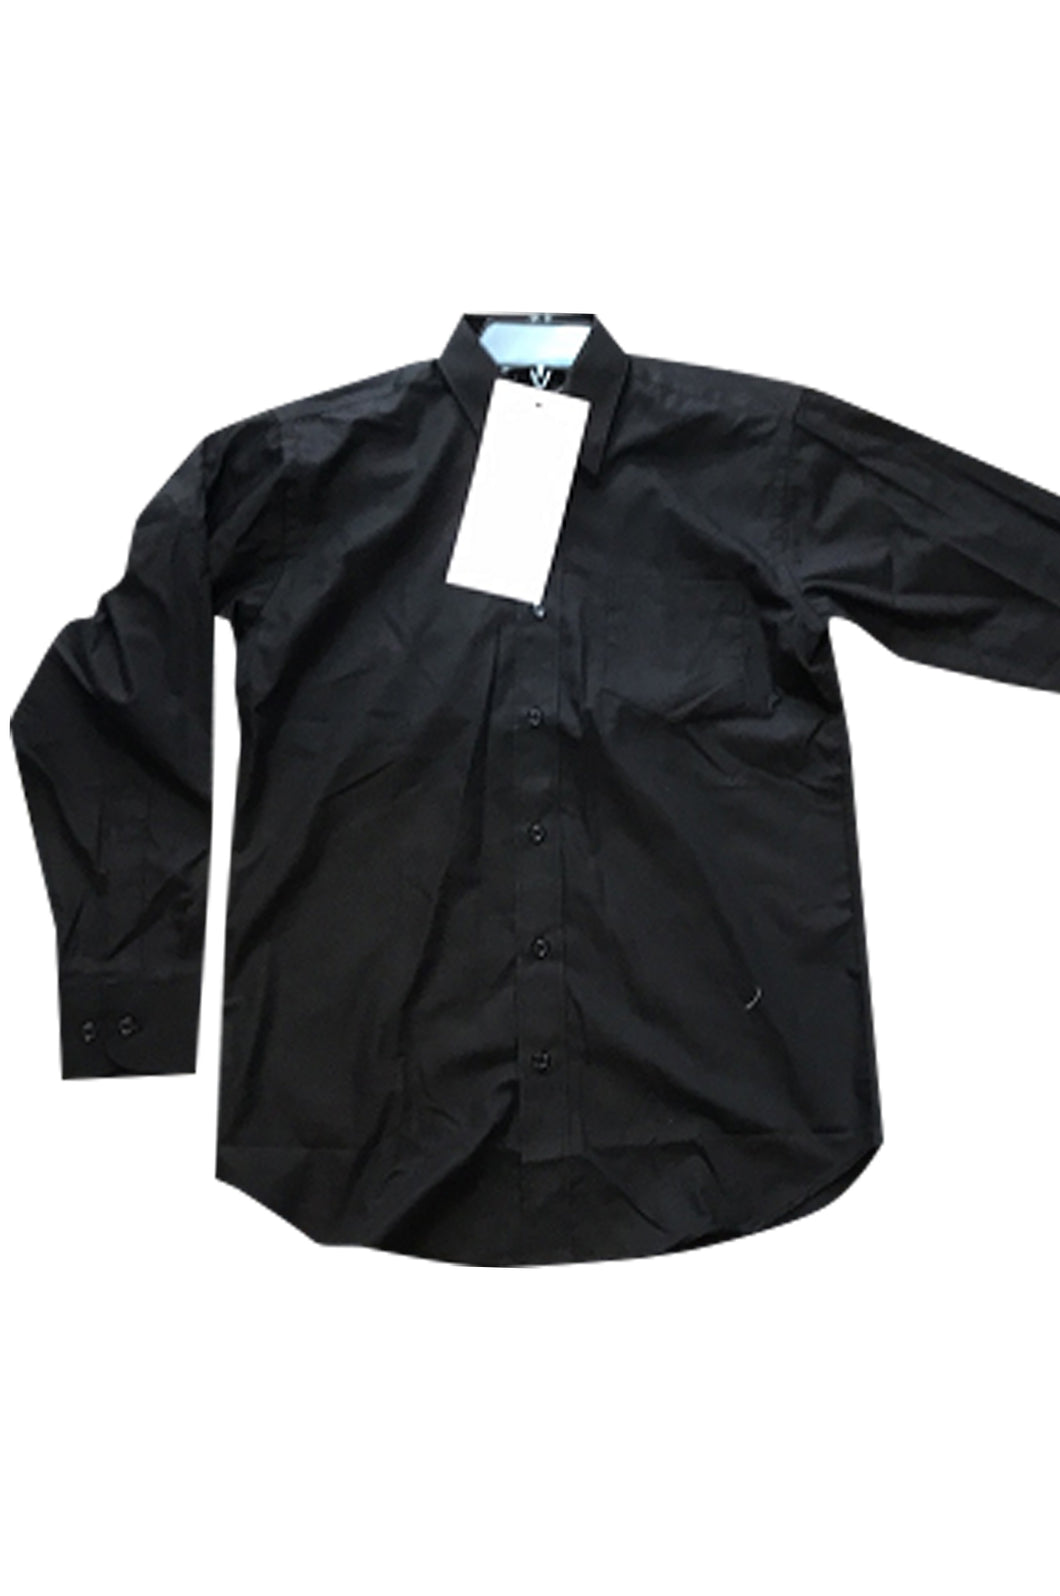 量身訂製黑色恤衫 訂購長袖制服襯衫 來辦訂購恤衫供應商  HK-Hanyeung-007